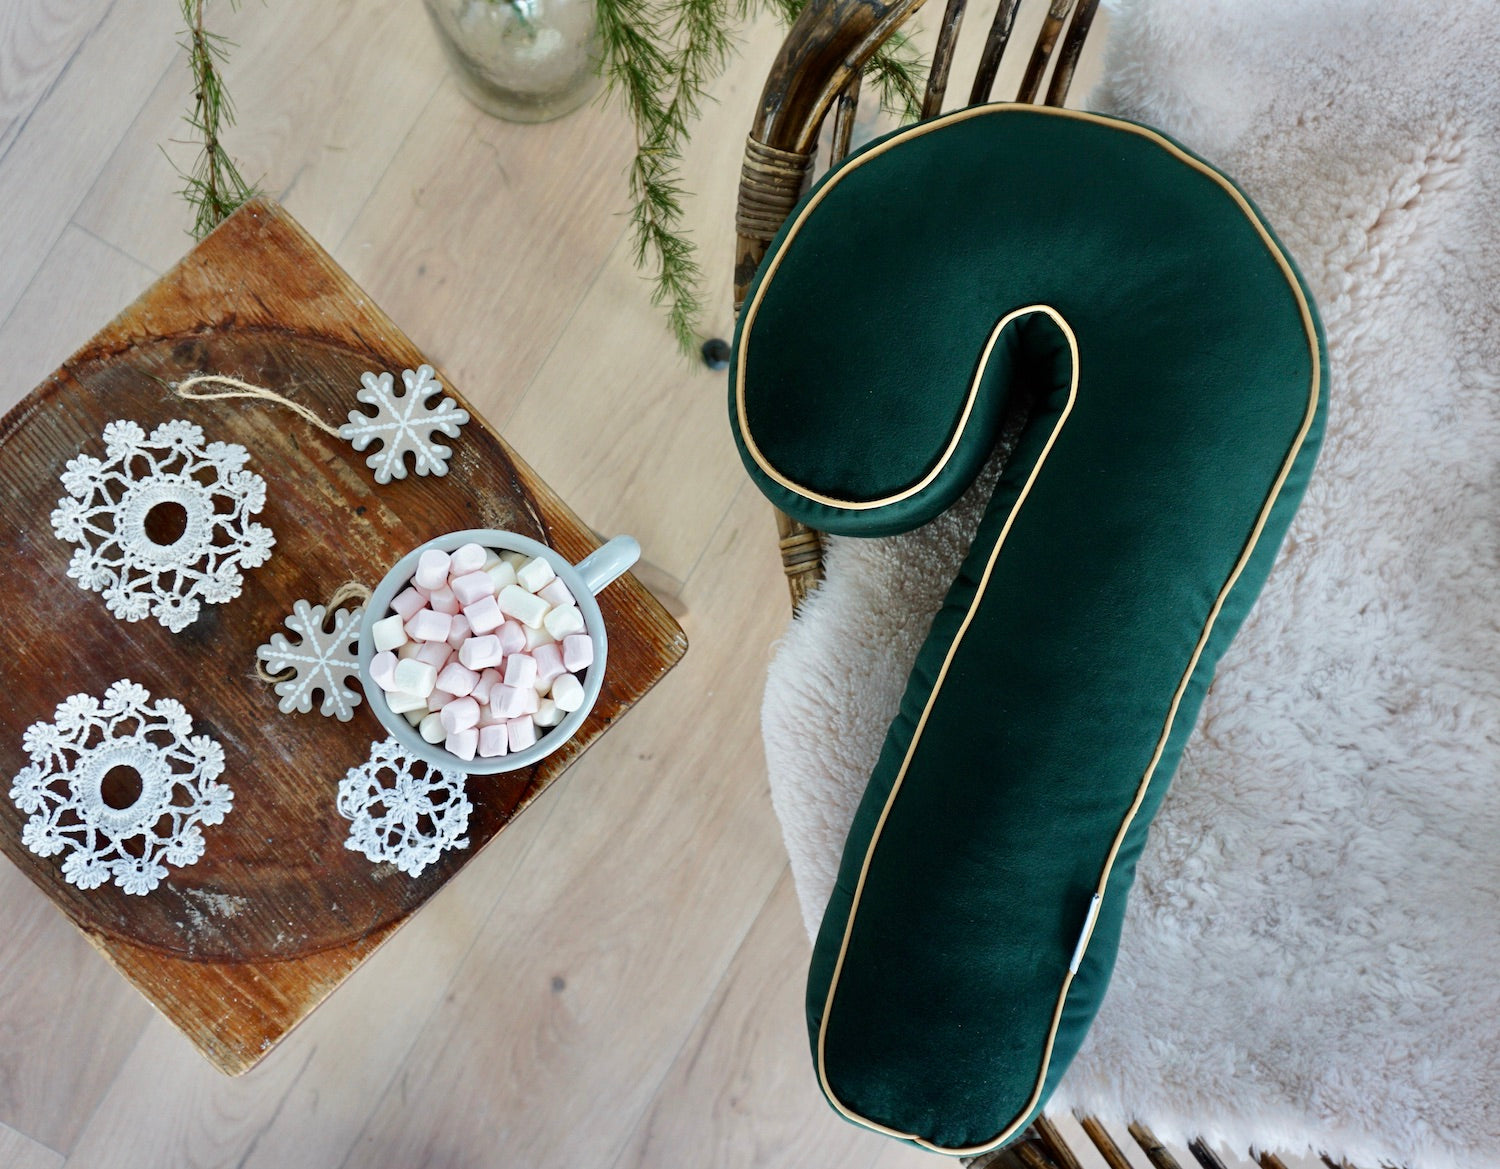 Świąteczna poduszka laska cukrowa zielona od Bettys Home świąteczna dekoracja w salonie